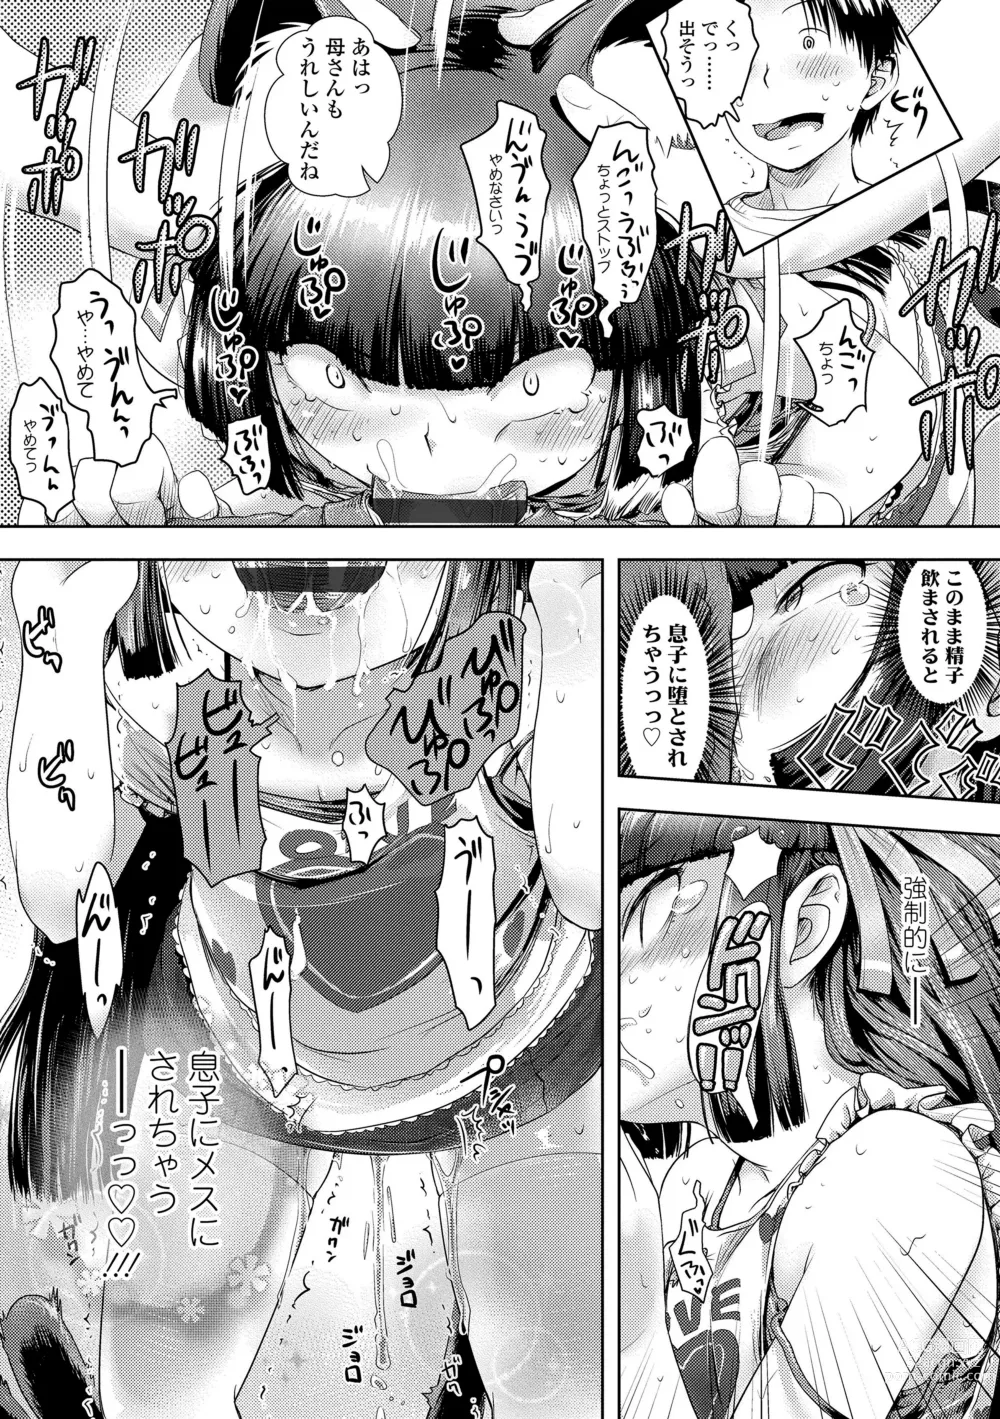 Page 9 of manga Ayakashi Enishi